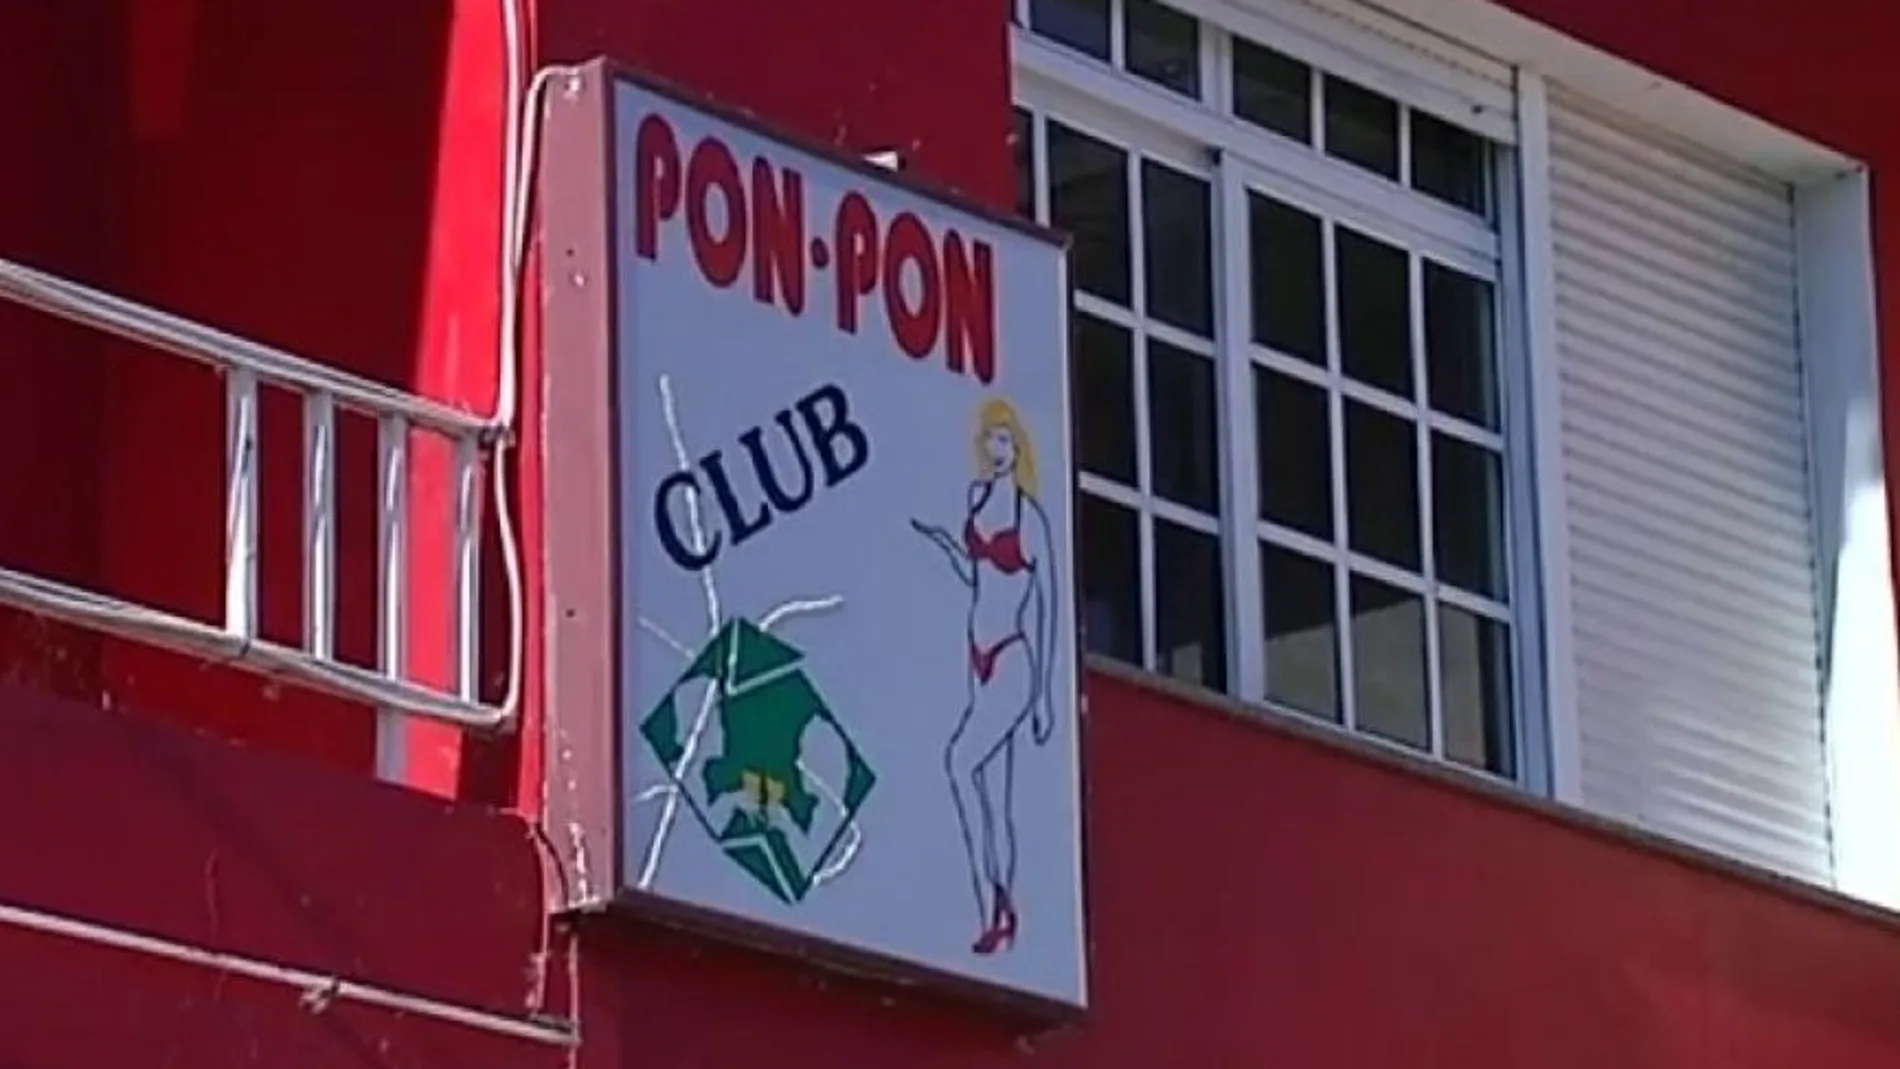 El club de alterne PON-PON de Vimianzo (La Coruña)